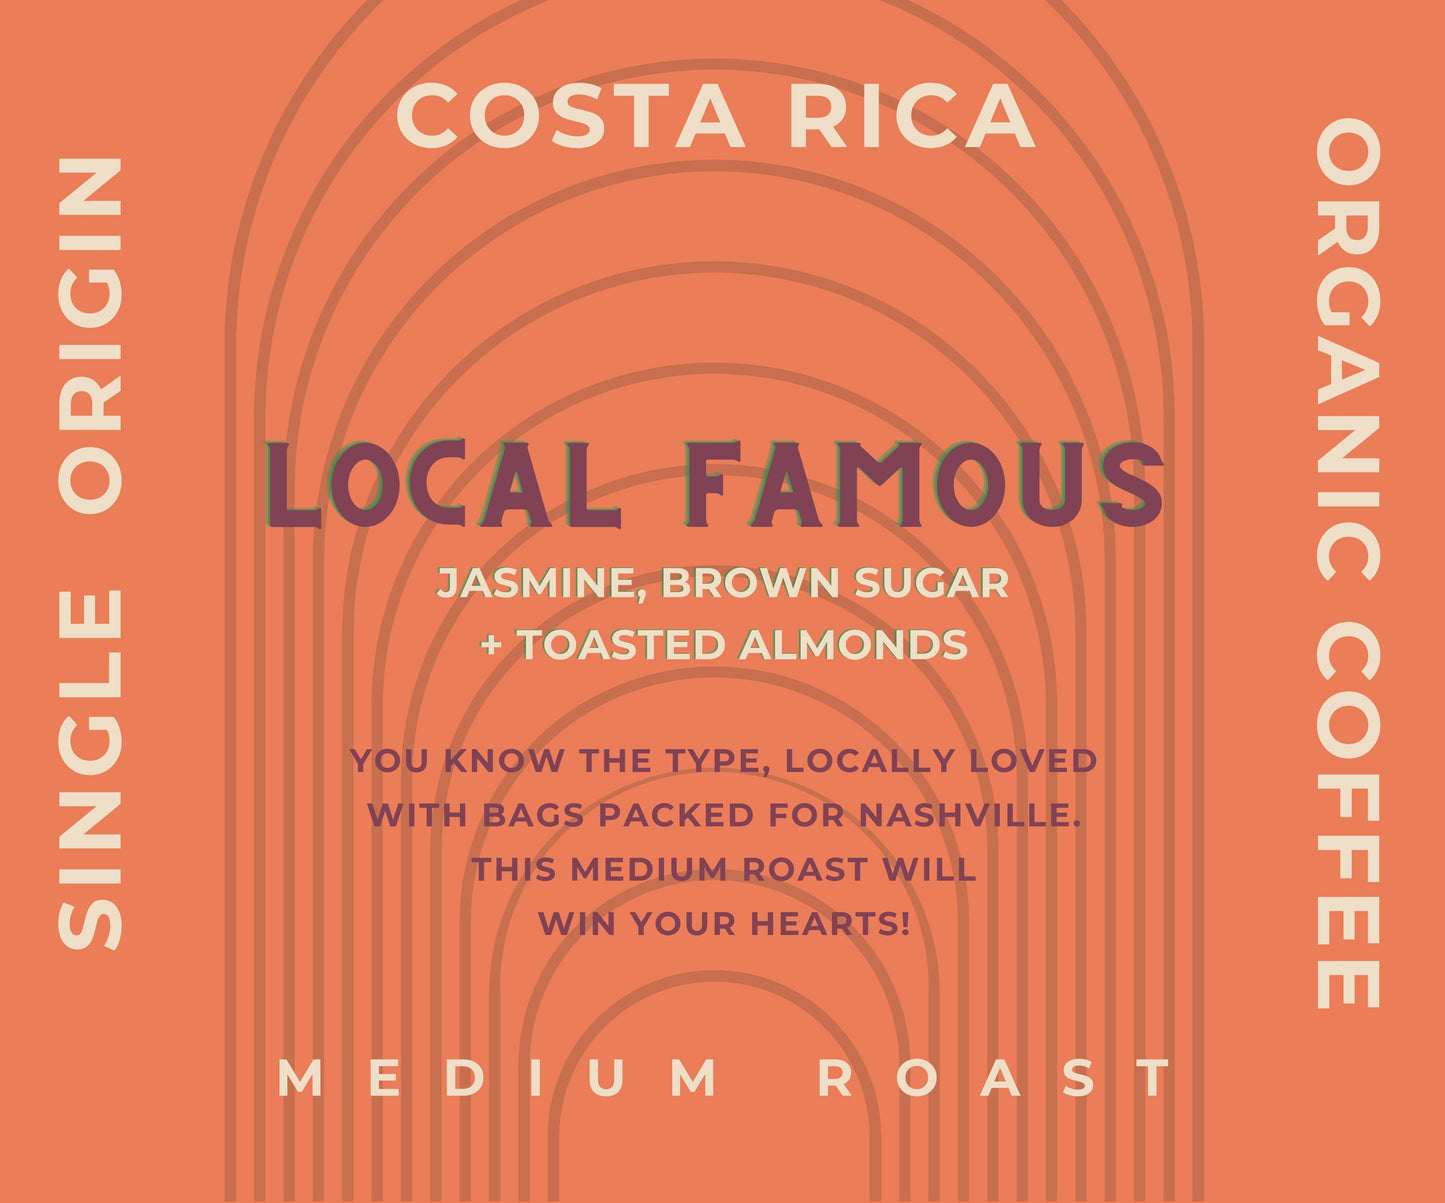 Local Famous - Single Origin Costa Rica